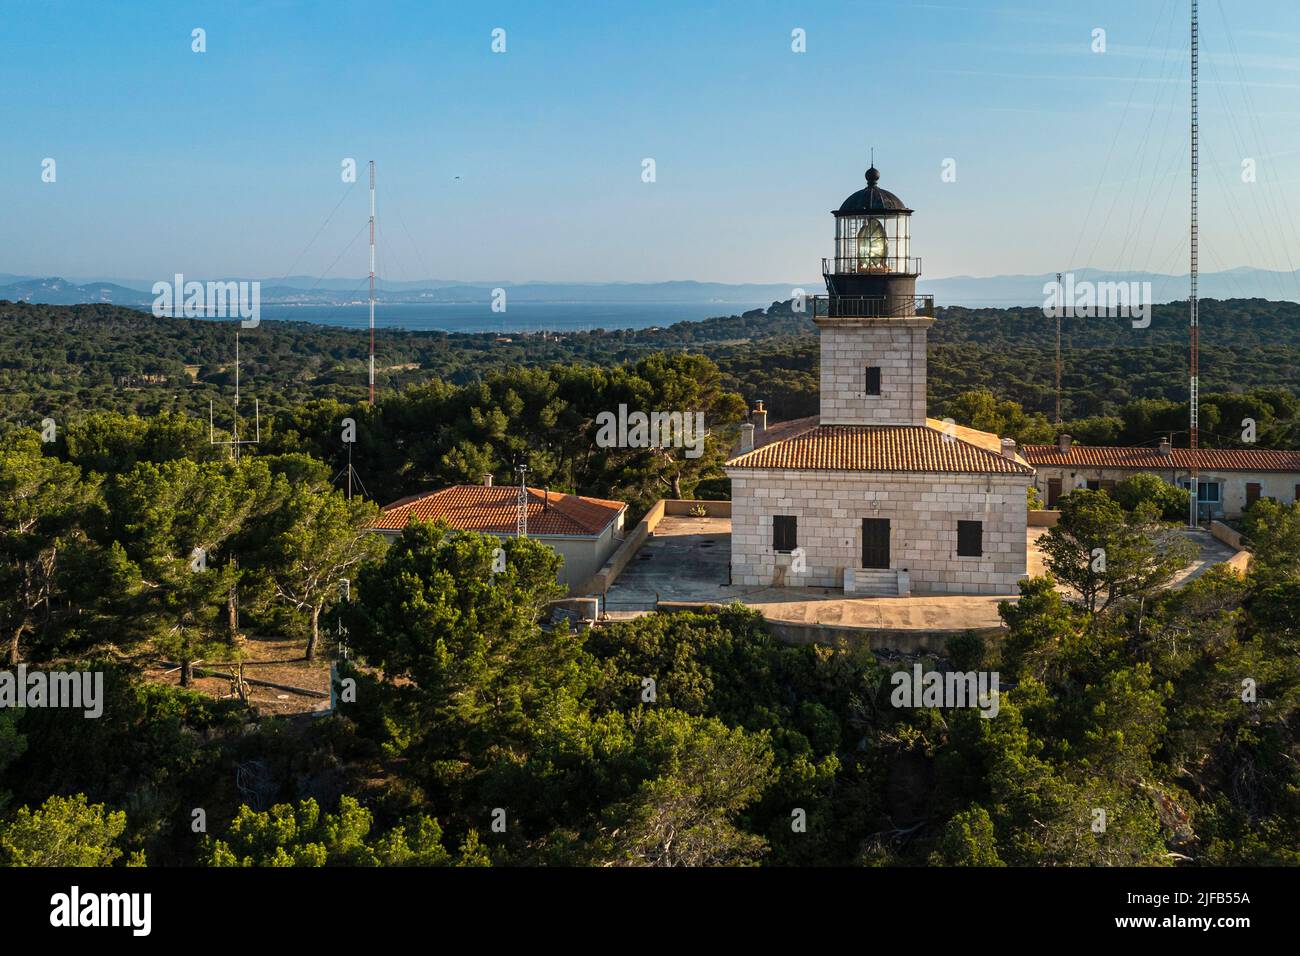 France, Var, Iles d'Hyeres, Parc National de Port Cros (National park of Port Cros), Porquerolles island, the lighthouse (aerial view) Stock Photo